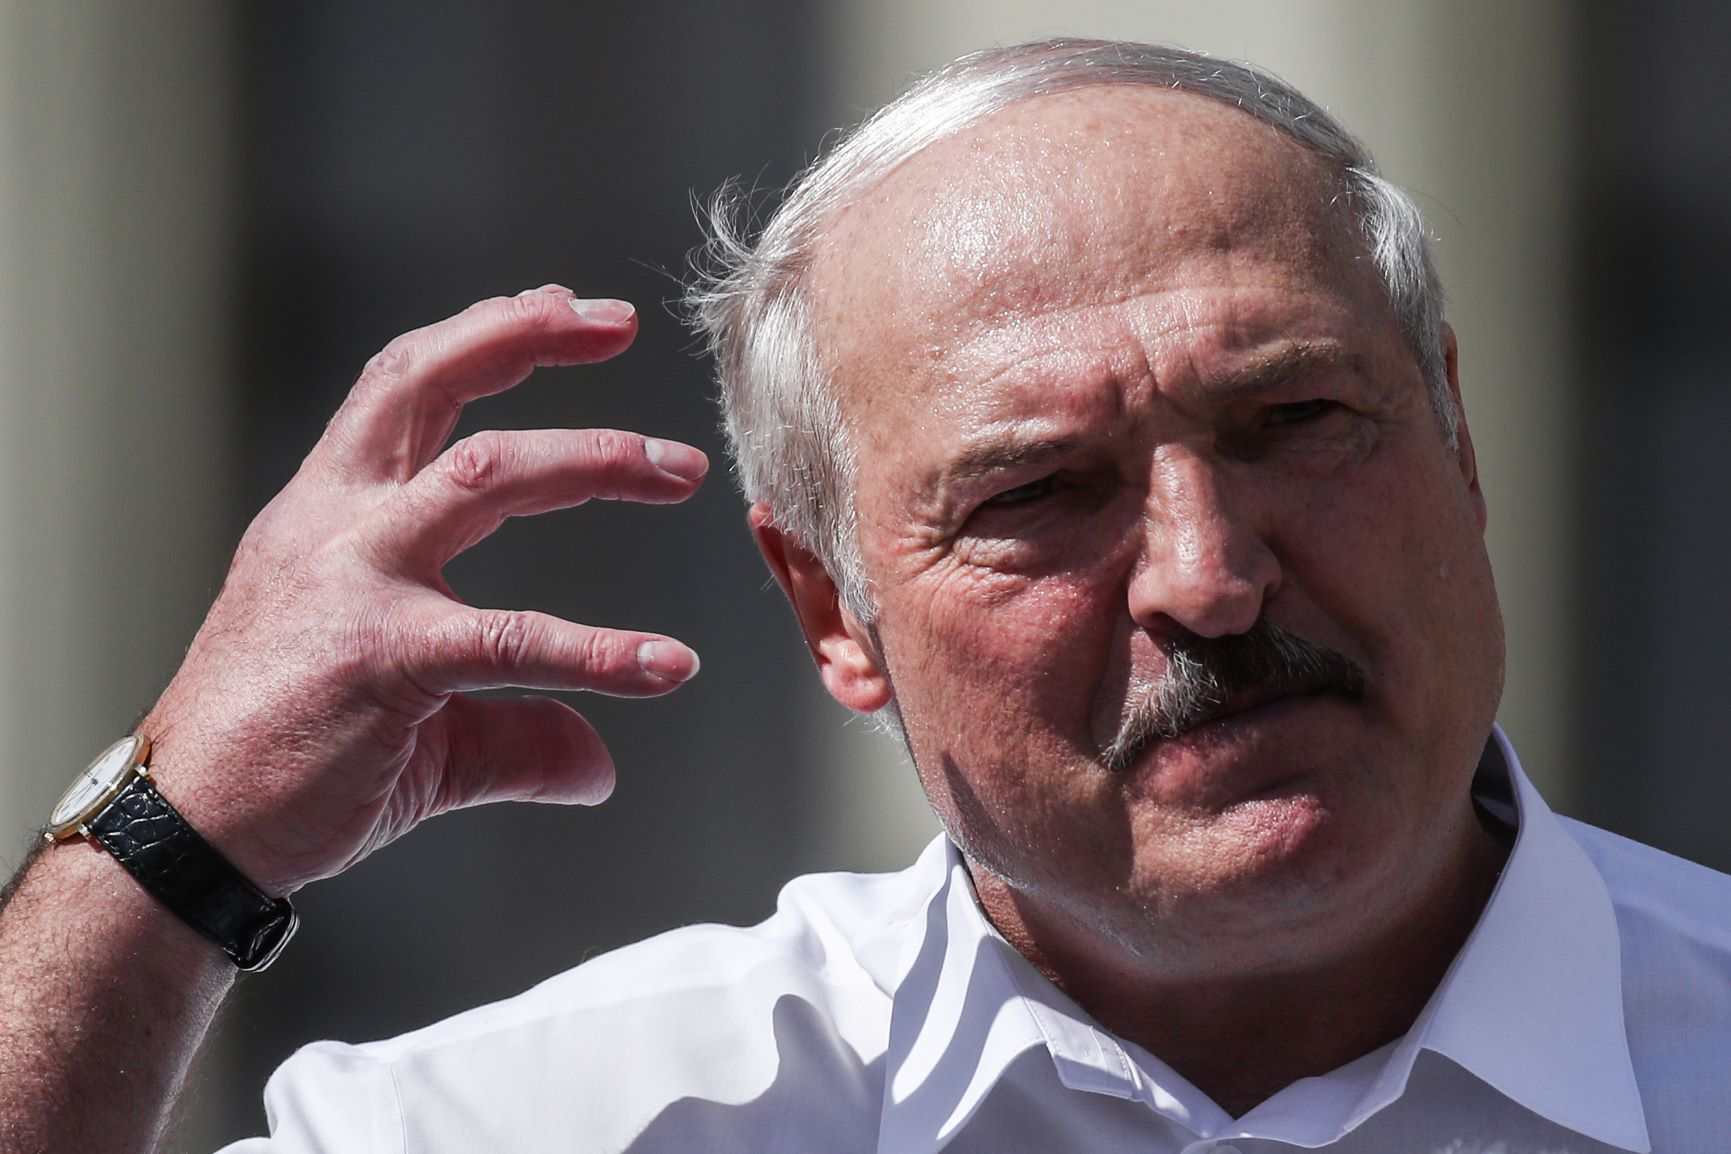 СМИ показали момент, когда рабочие на заводе начали кричать в лицо Лукашенко: "Уходи"